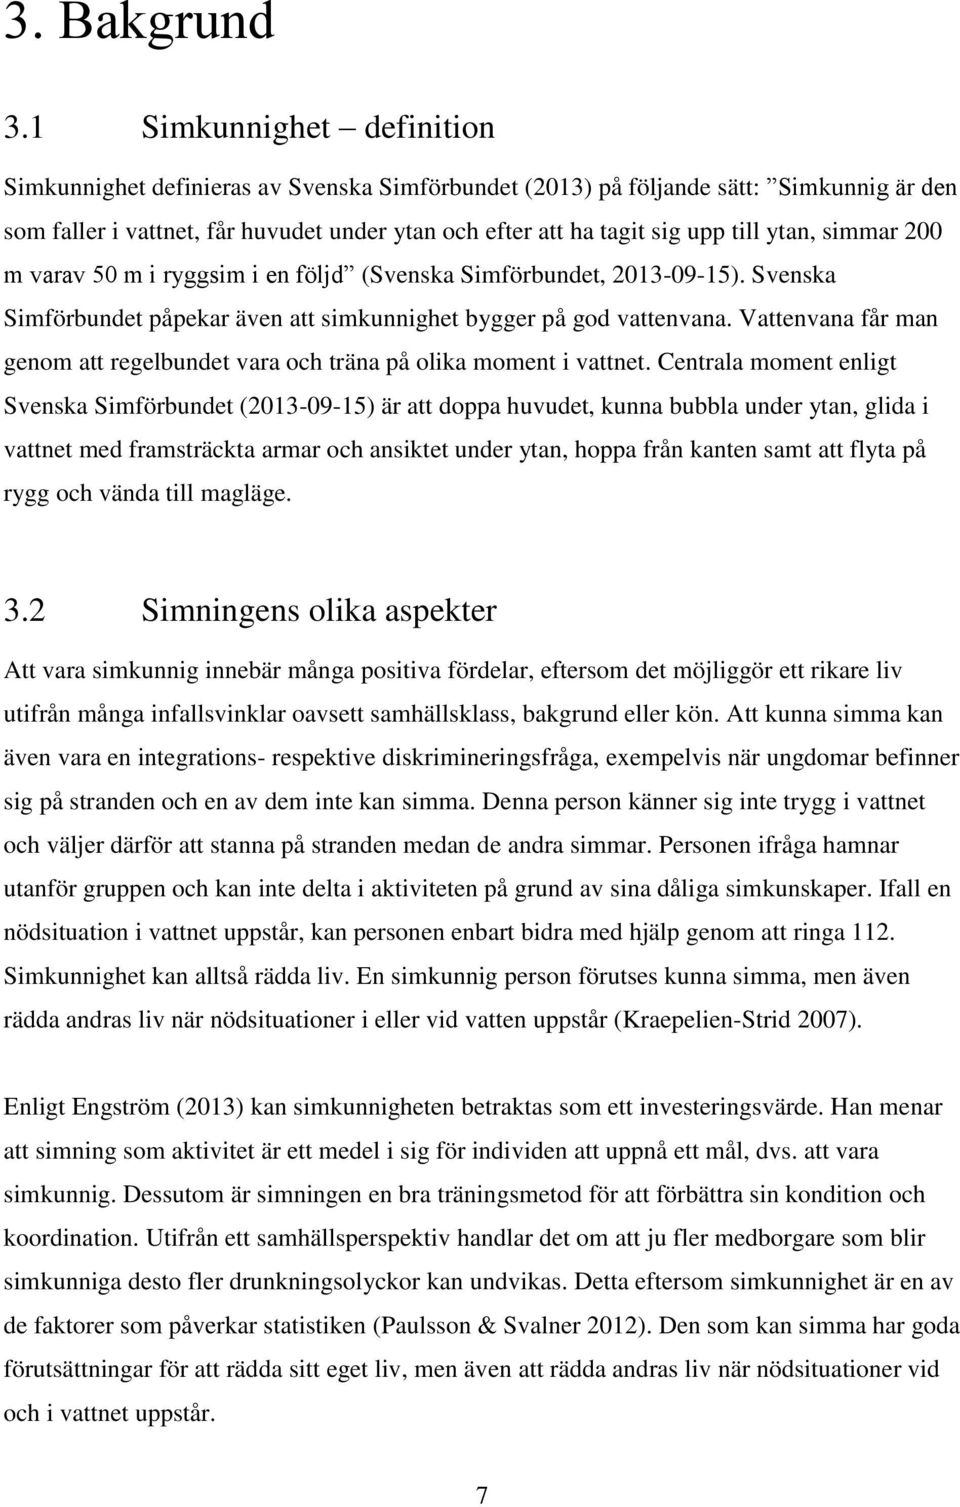 ytan, simmar 200 m varav 50 m i ryggsim i en följd (Svenska Simförbundet, 2013-09-15). Svenska Simförbundet påpekar även att simkunnighet bygger på god vattenvana.